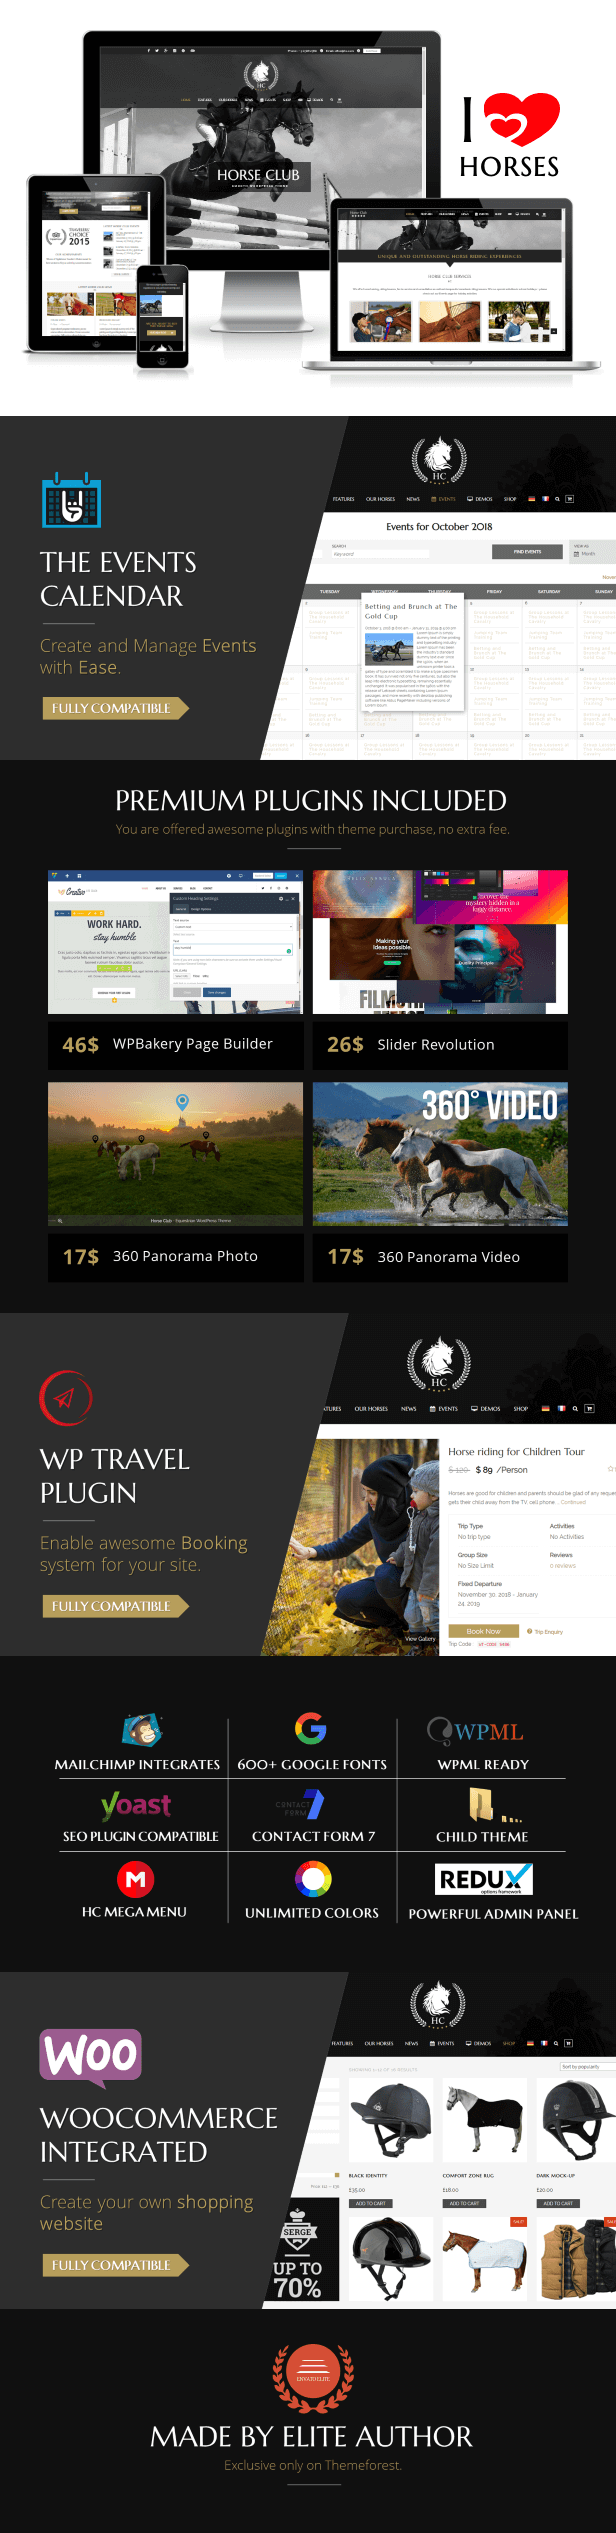 Horse Club: el tema ecuestre de WordPress está hecho para establos, asociaciones ecuestres, equitación, reserva de tours de caballos, lecciones, escuela de caballos, centro ecuestre, administración de establos,